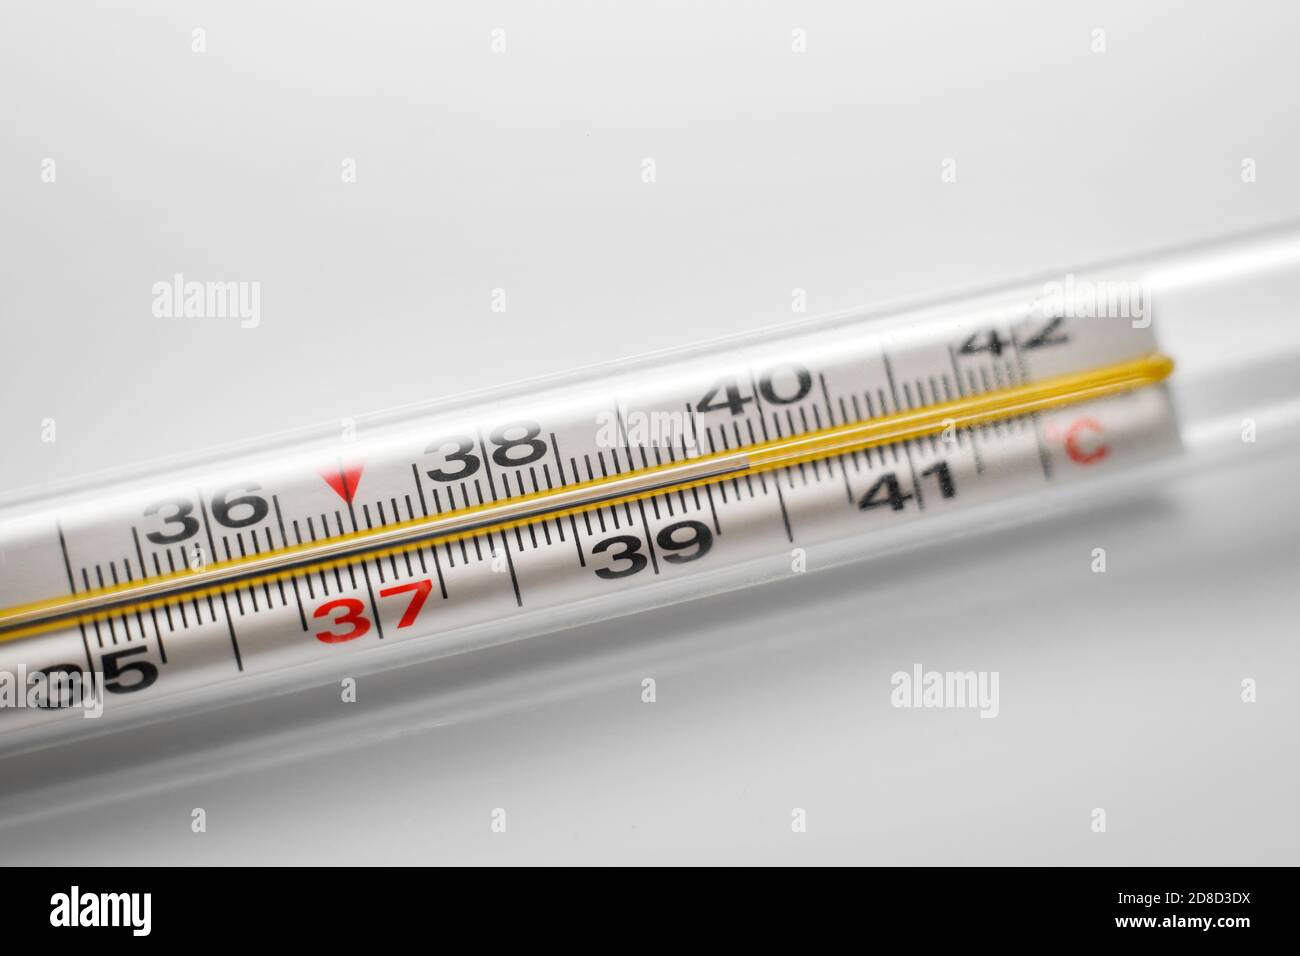 Температура 39 вечером повышается. Вирус серотипа h1n1 испанка. Грипп Pixabay. High temperature.